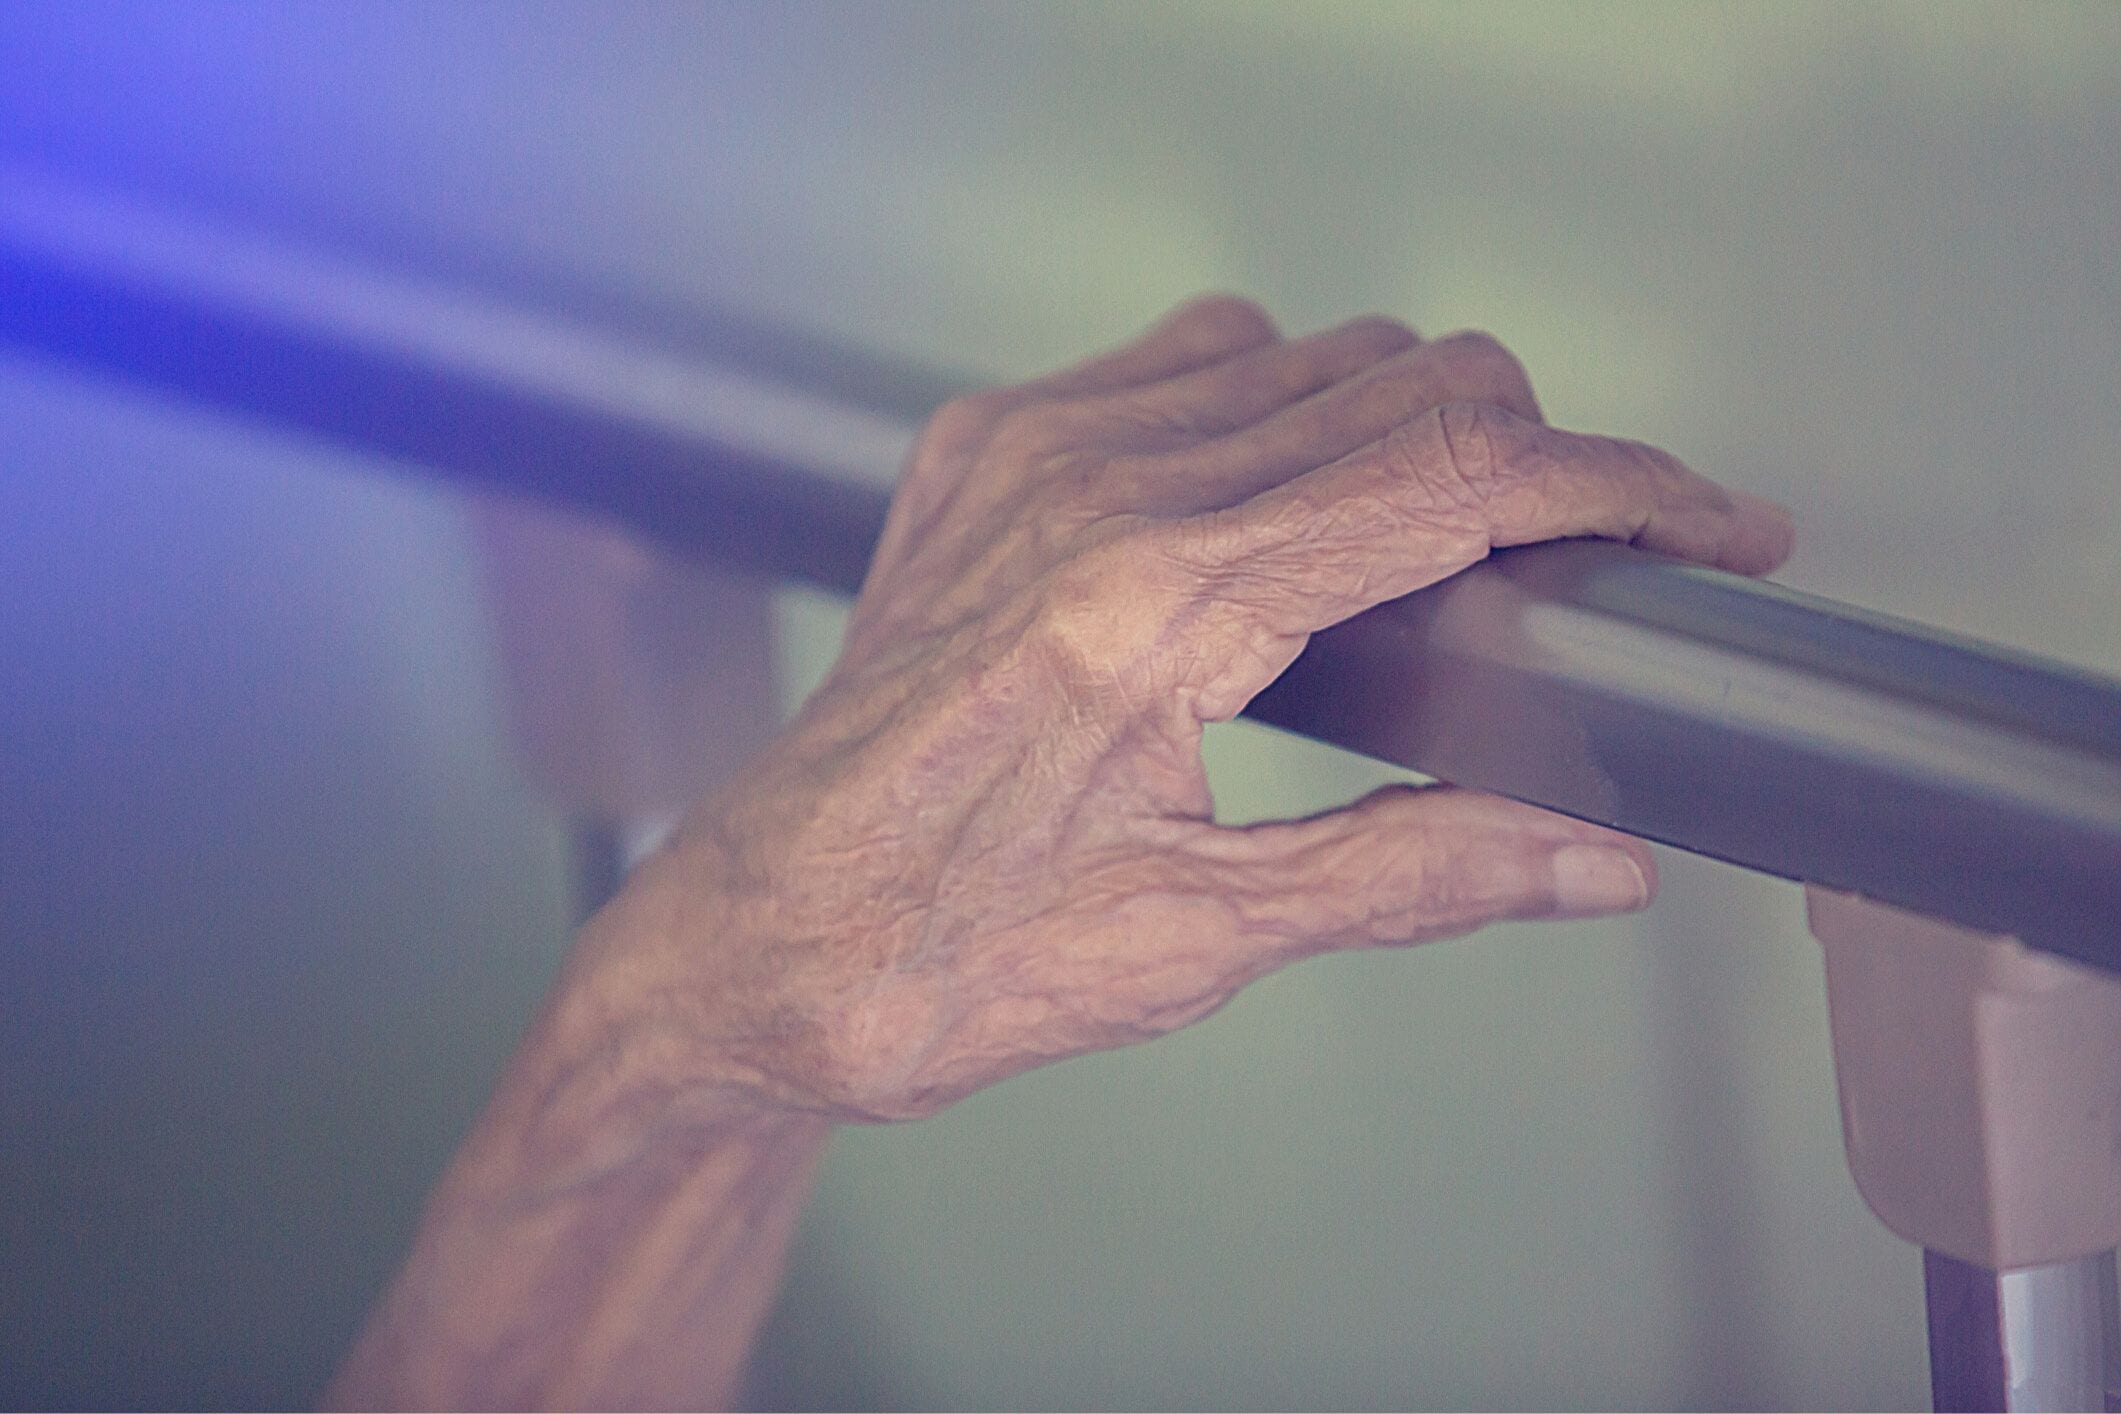 Senior's hand on bed rail